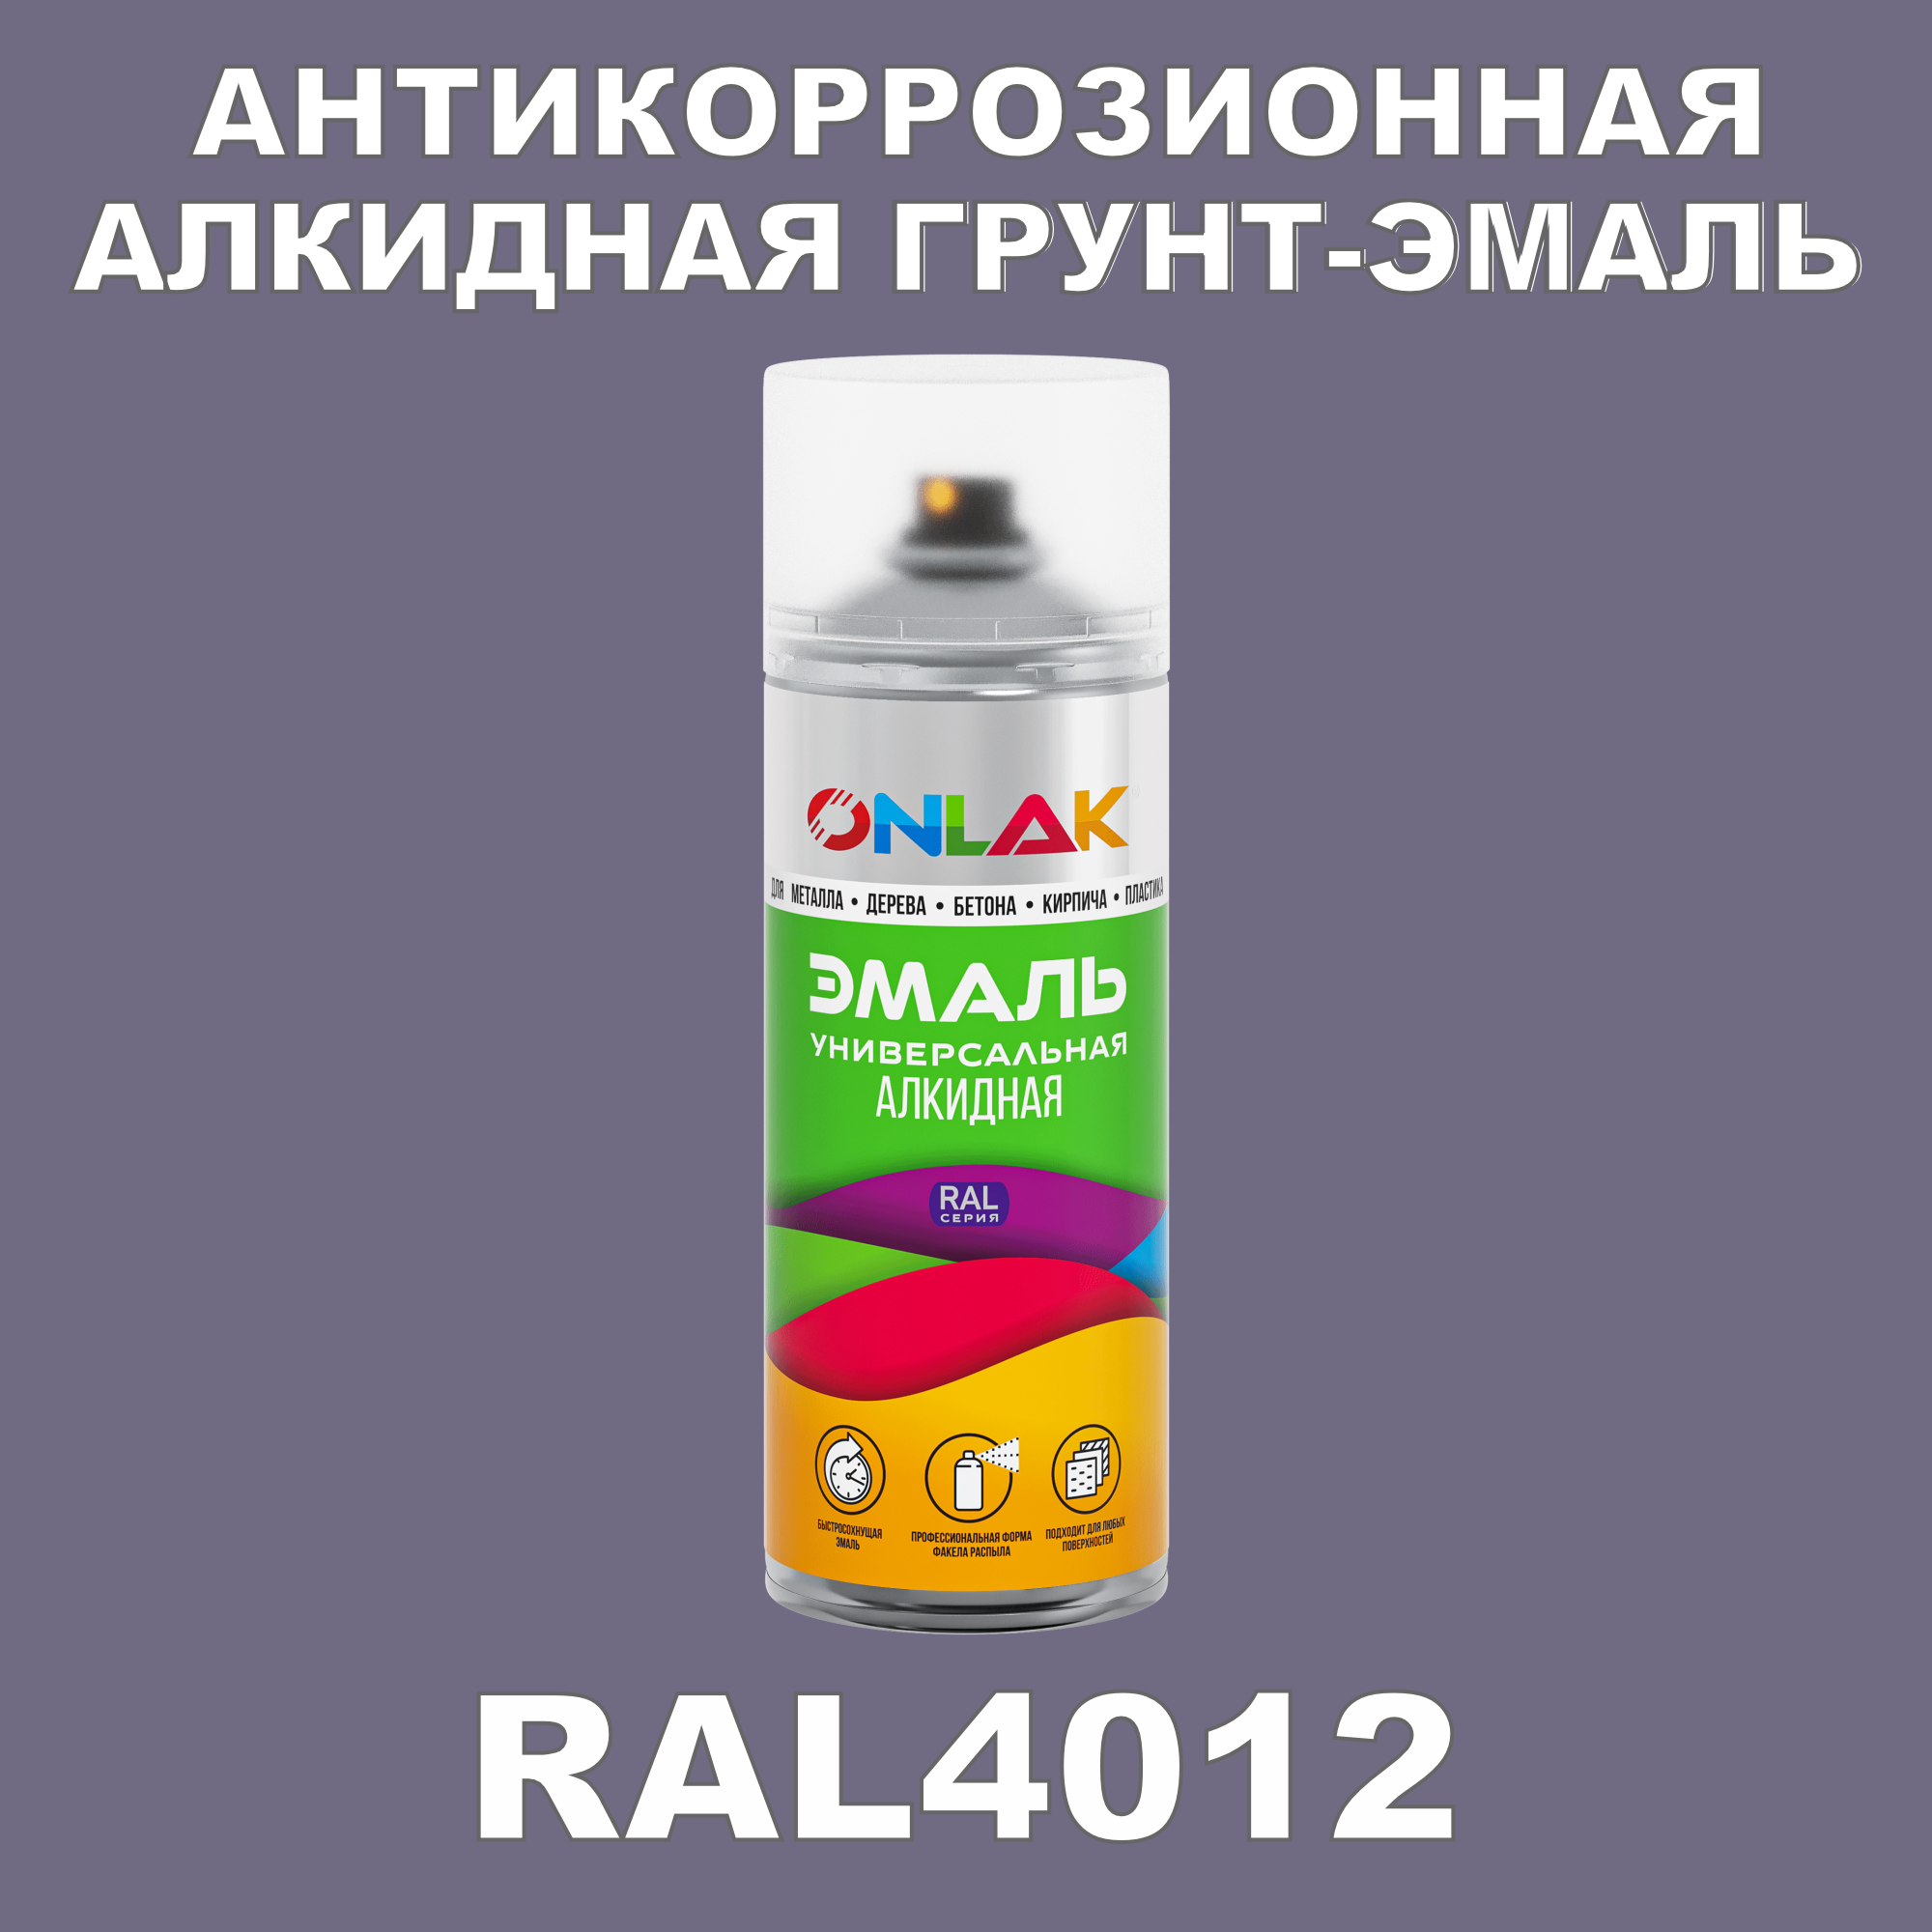 Антикоррозионная грунт-эмаль ONLAK RAL 4012,фиолетовый,715 мл рюкзак детский на молнии 3 наружных кармана цвет фиолетовый